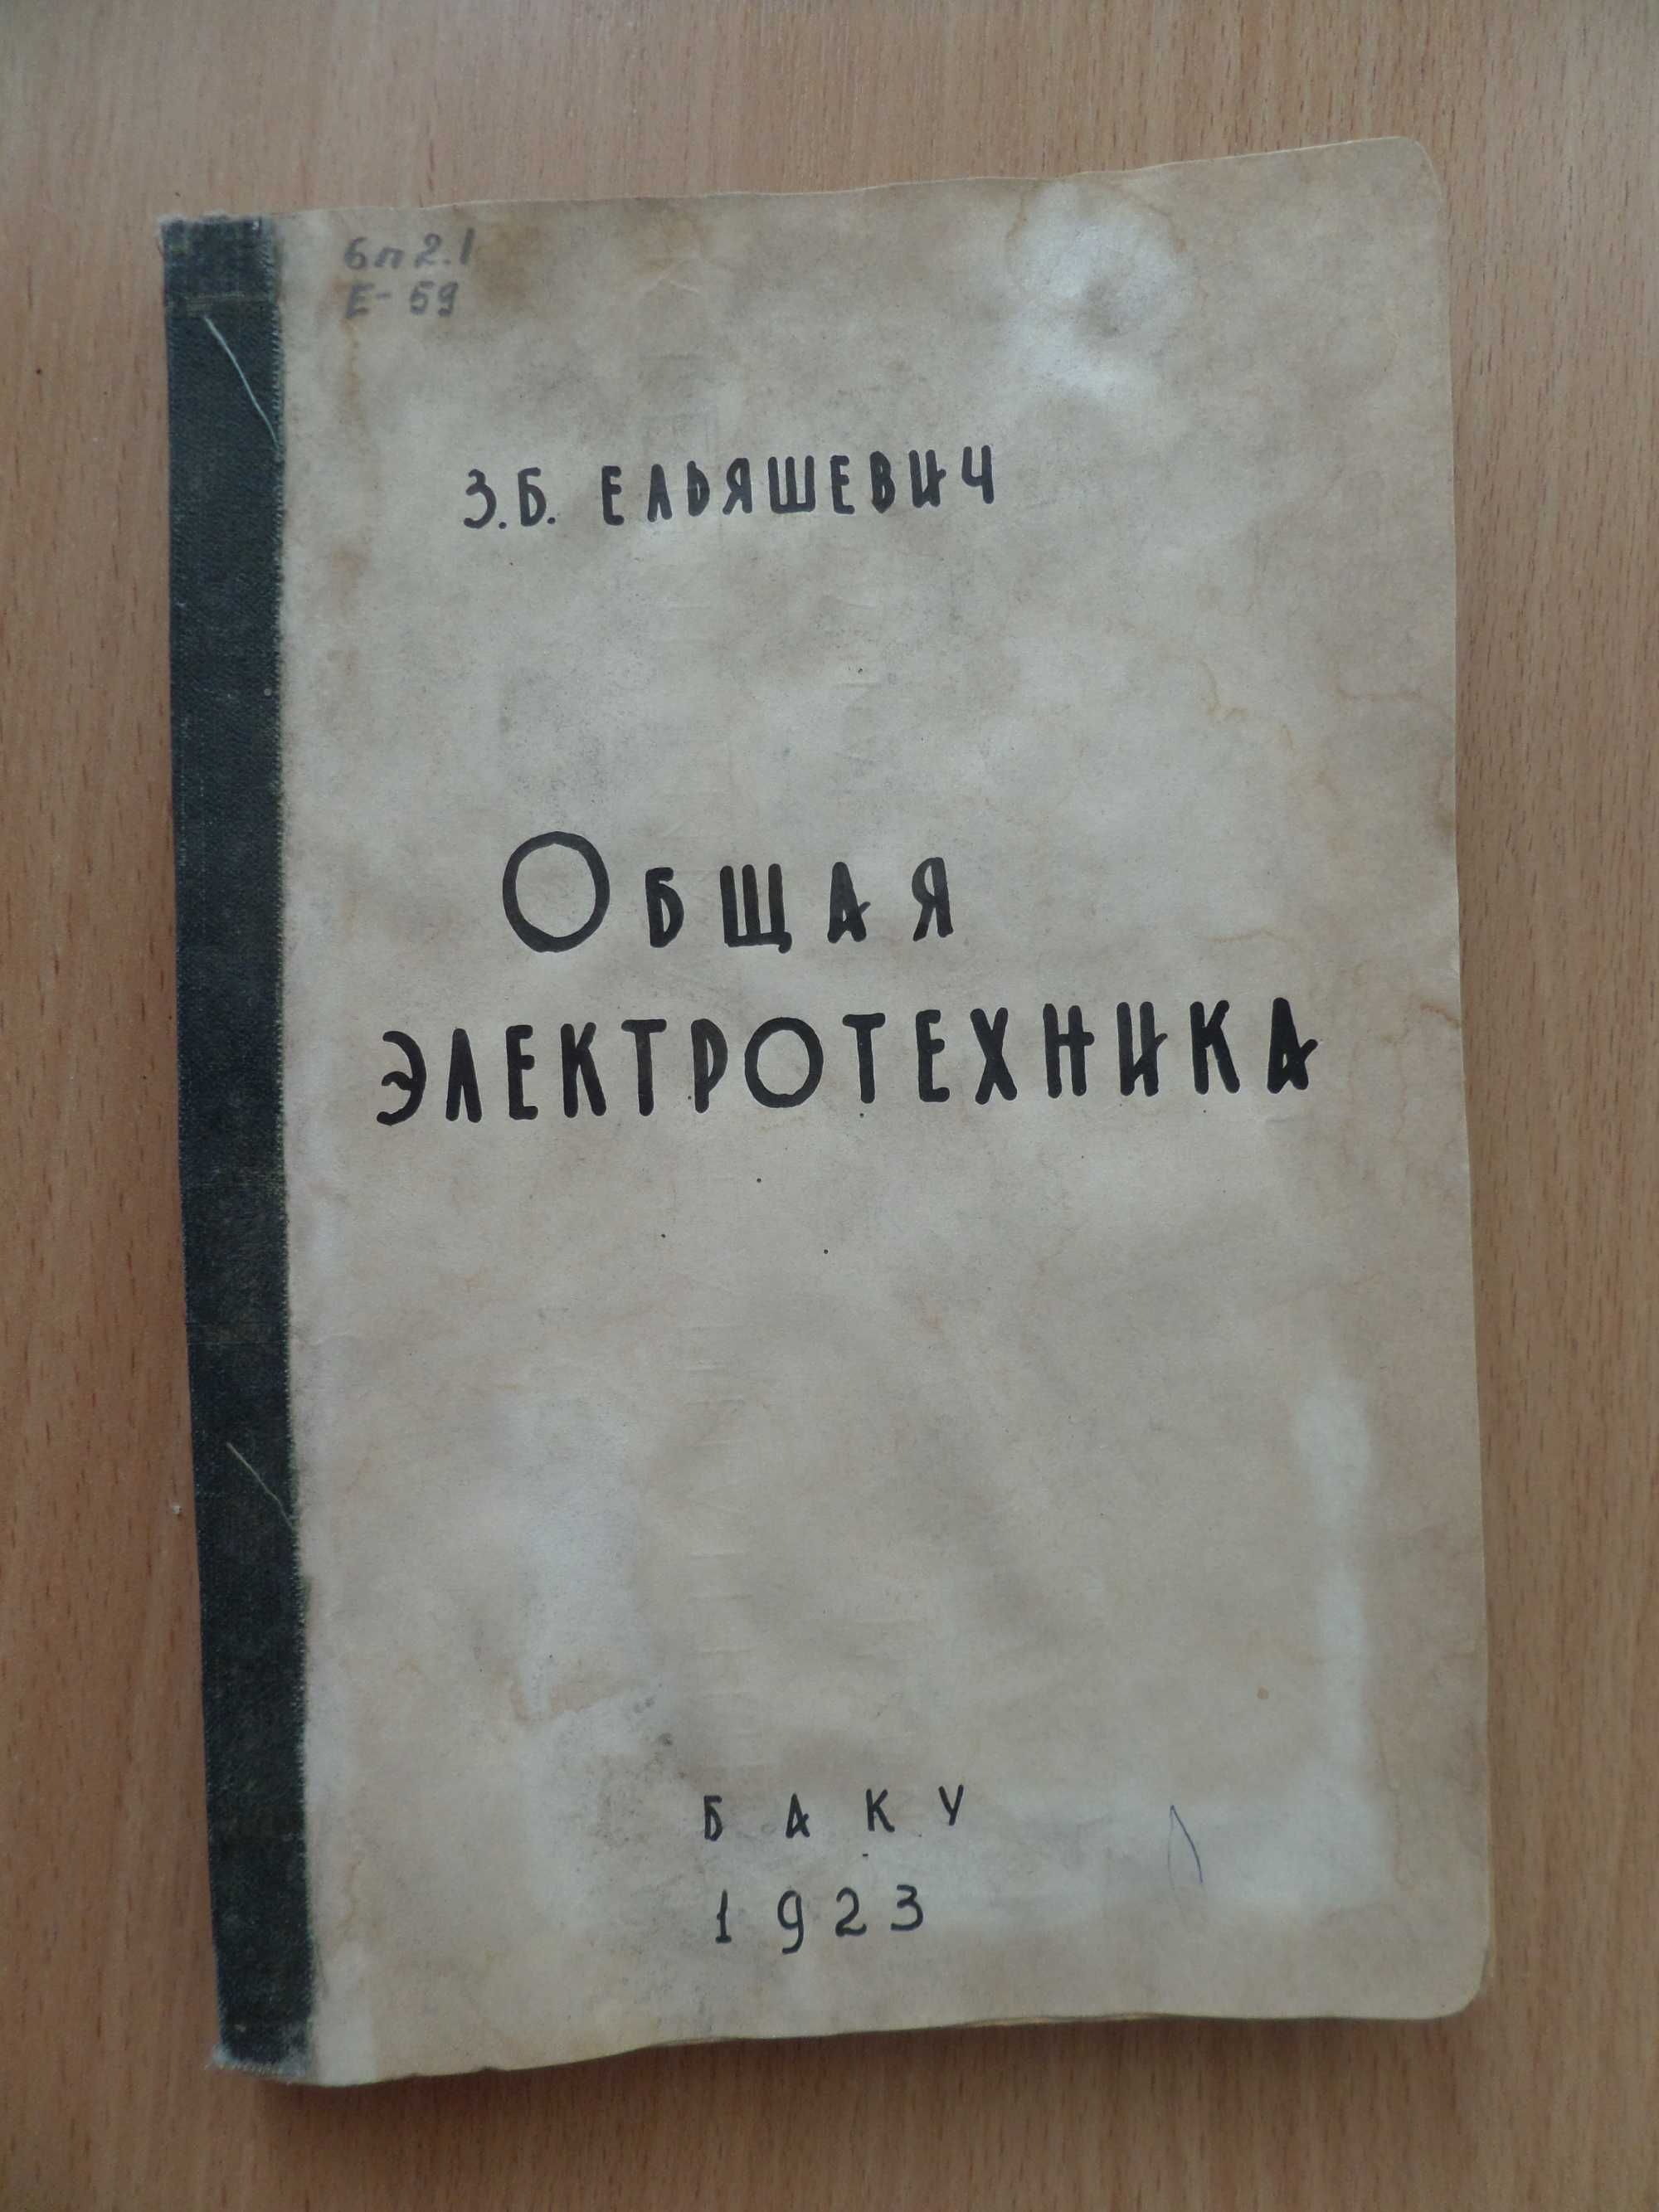 Книга ОБЩАЯ ЭЛЕКТРОТЕХНИКА. Ч.1. Физические основы 1923г Ельяшевич З.Б